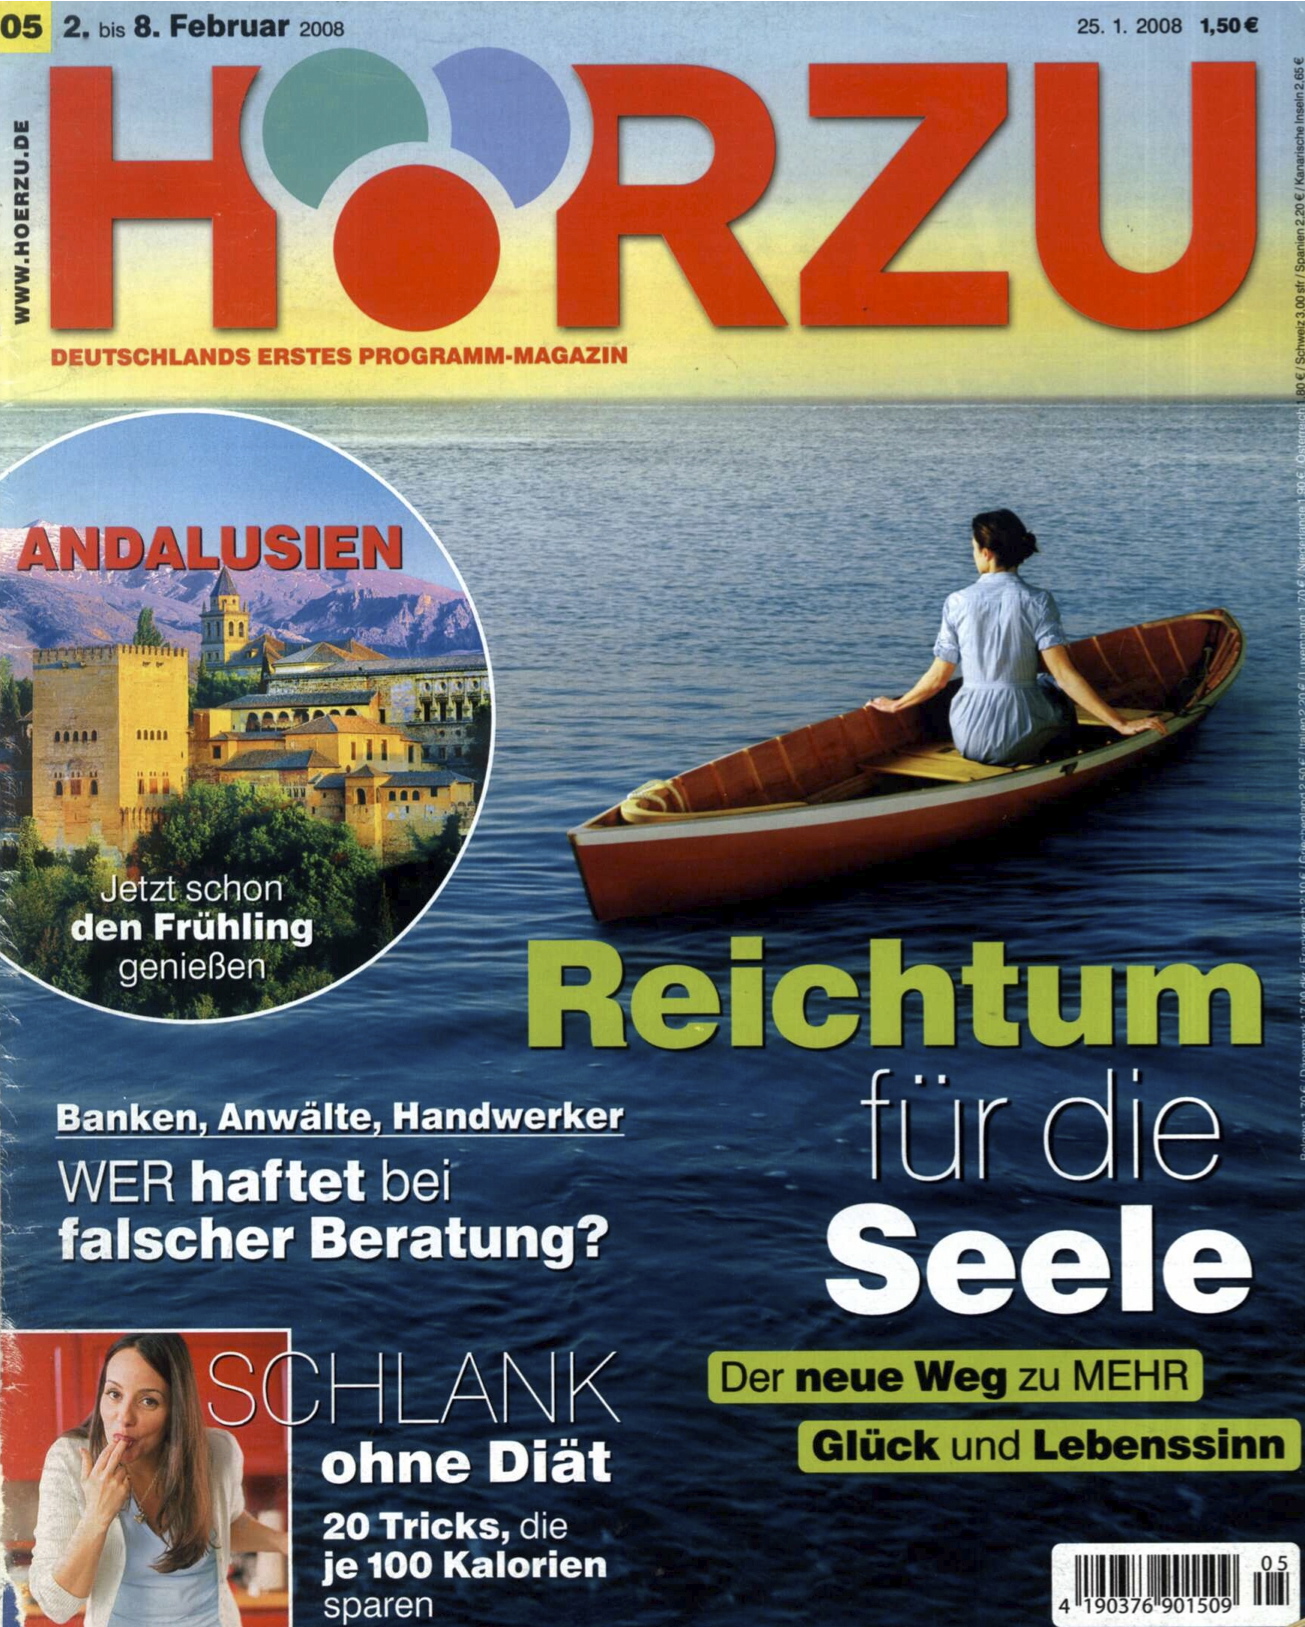 HZ_8.2.2008_Cover.jpg